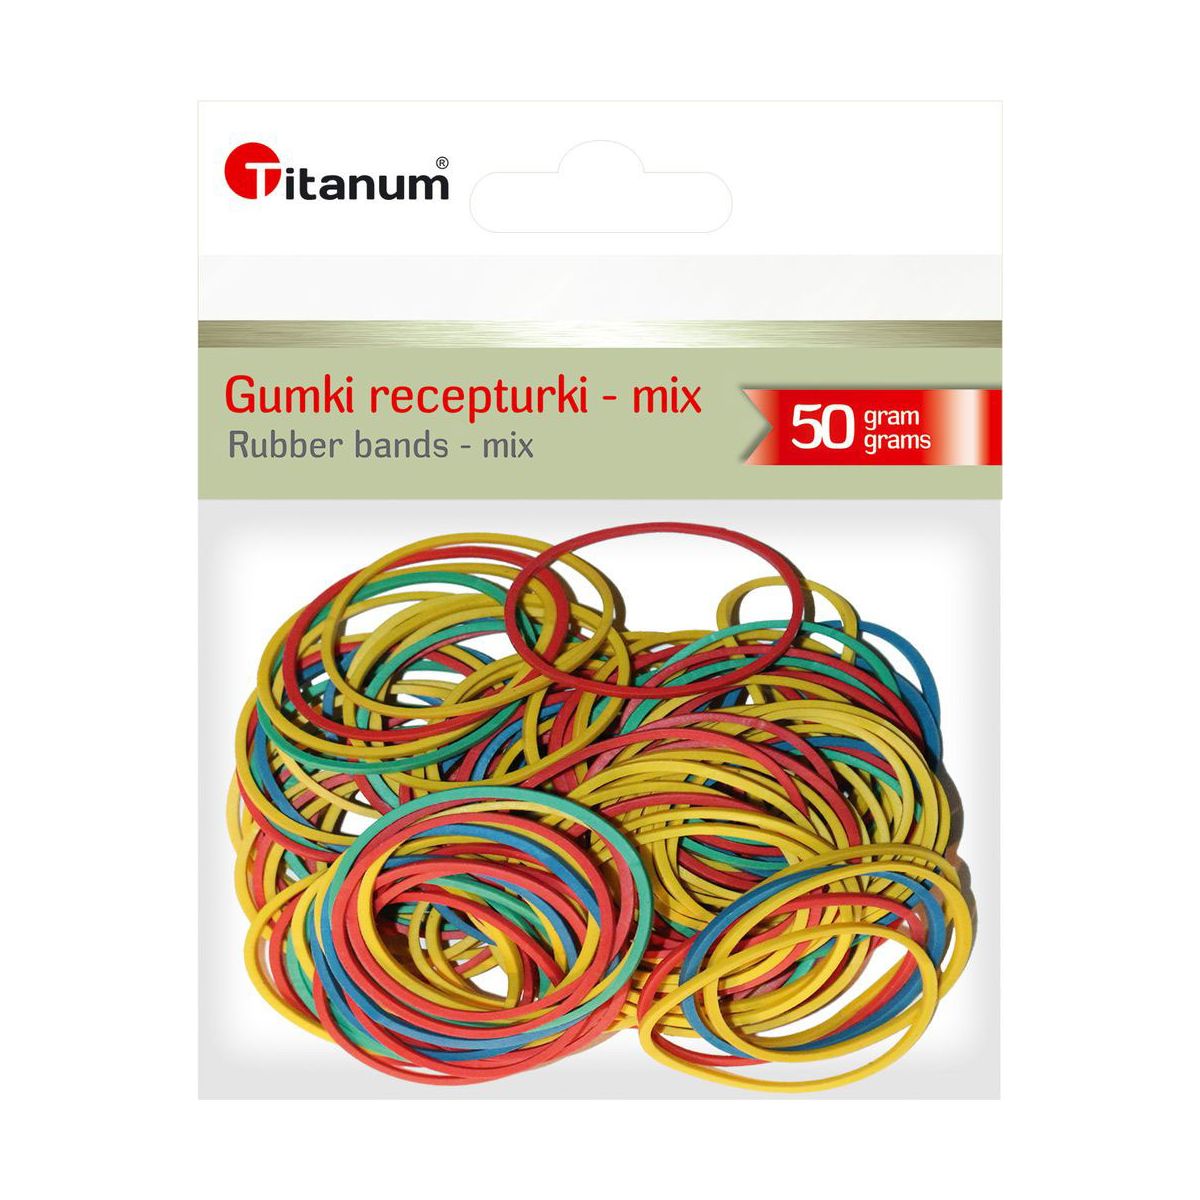 Gumki recepturki Titanum 50g śr. (mix)mm